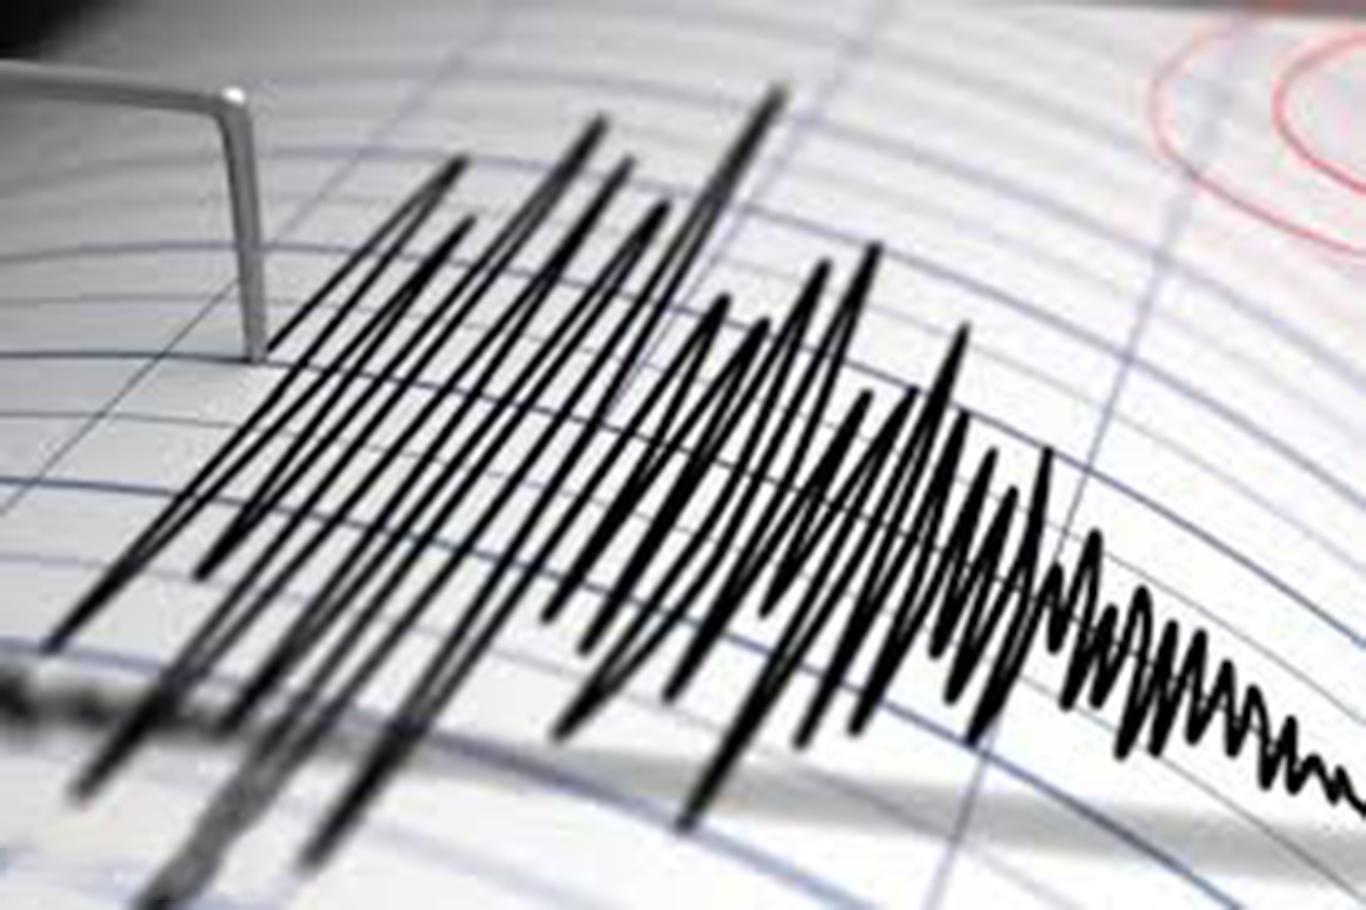 5.2-magnitude quake hits southern Iran